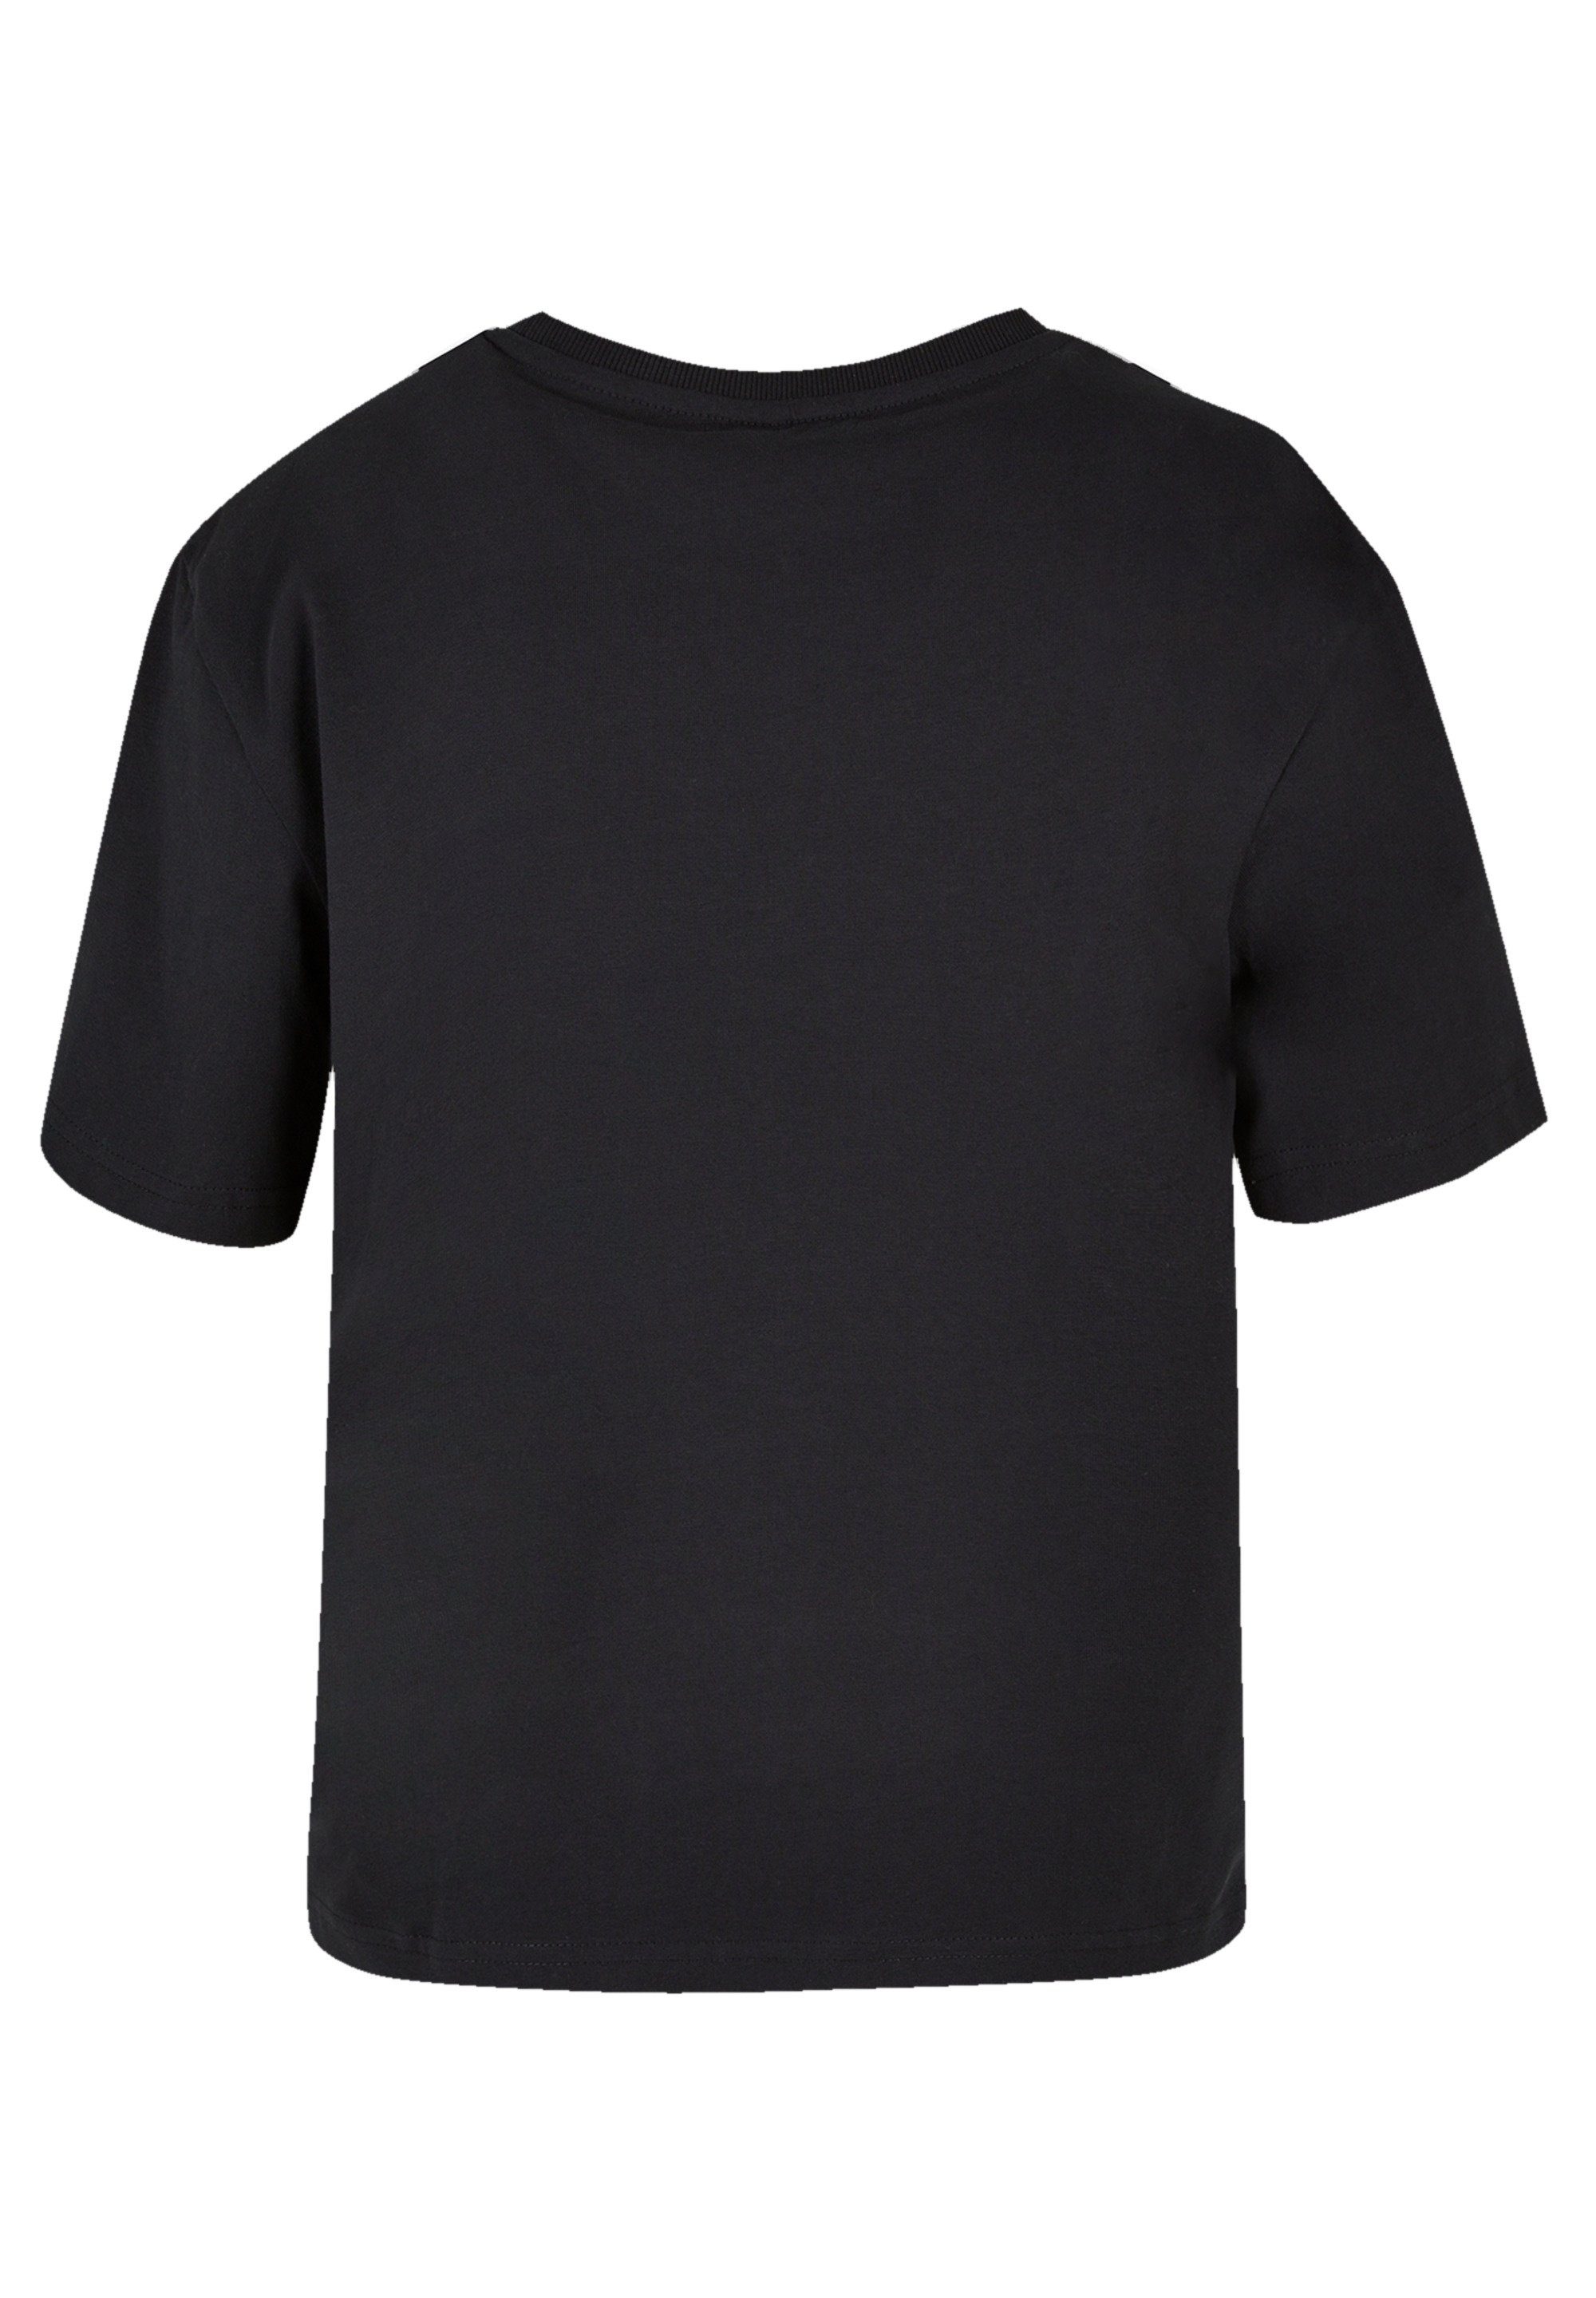 F4NT4STIC T-Shirt Disney Lilo & Stitch Rockstar Premium Qualität,  Komfortabel und vielseitig kombinierbar